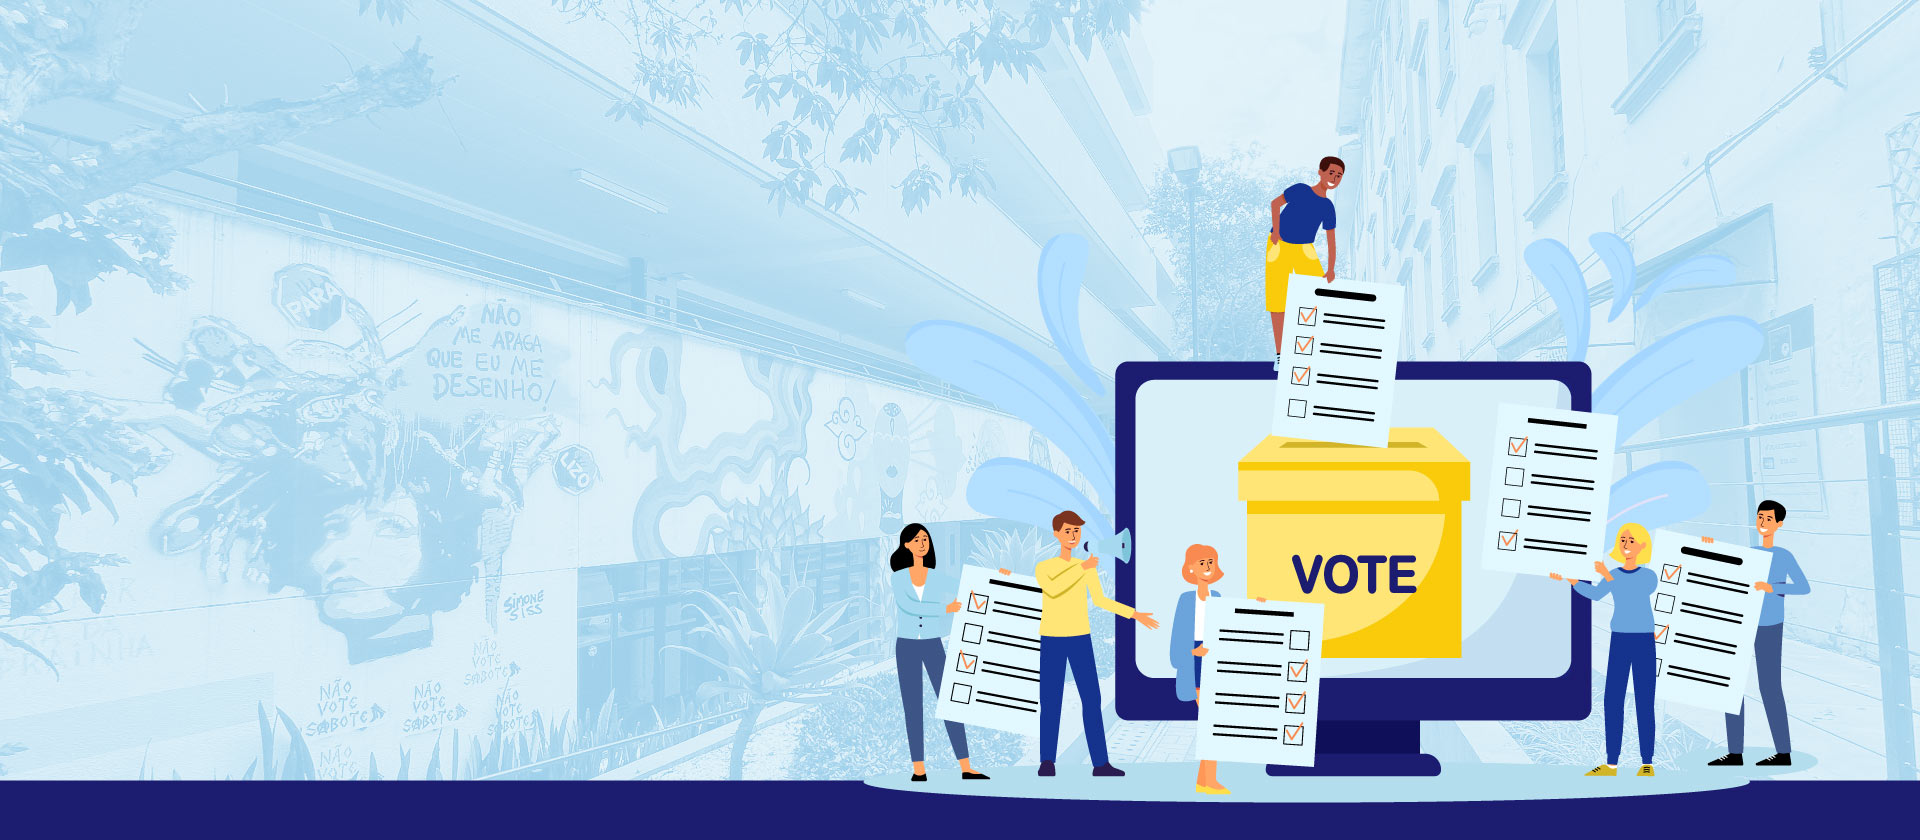 Imagem ilustrativa mostra desenho de pessoas colocando votos em uma urna eleitoral.